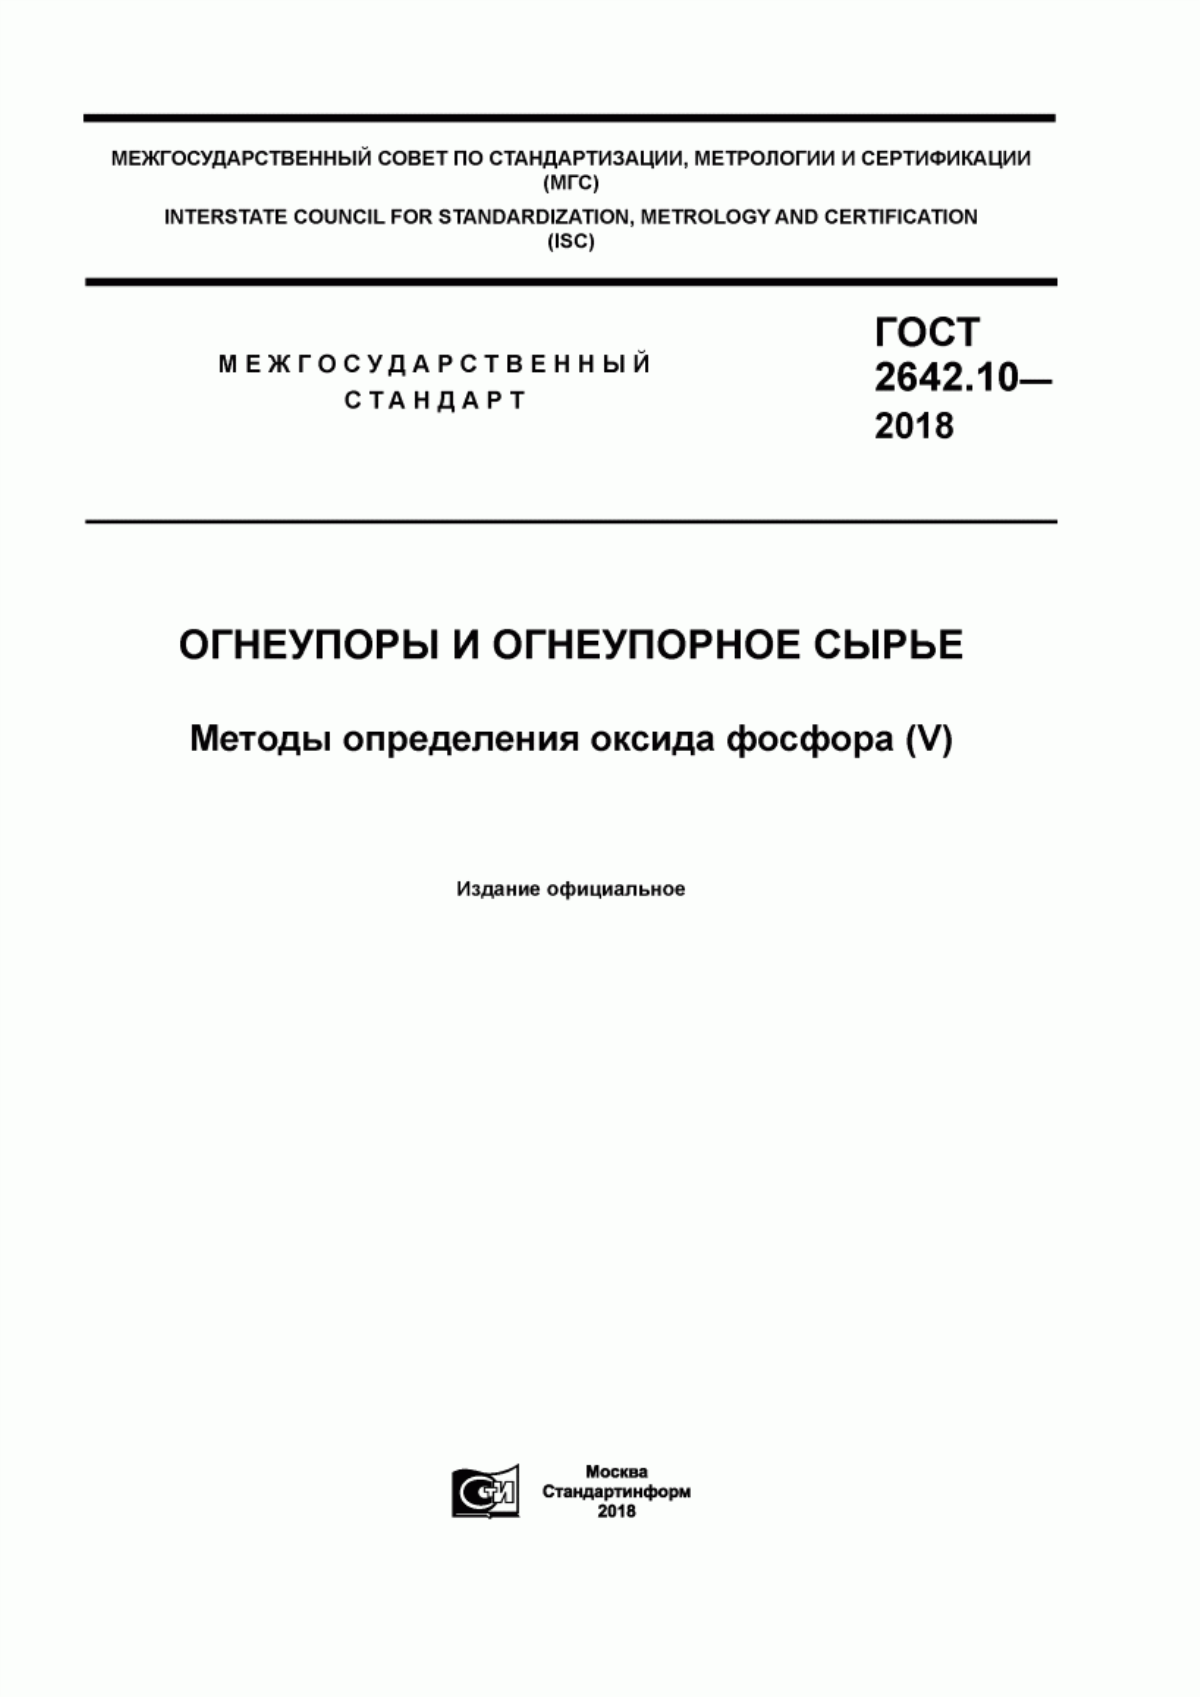 ГОСТ 2642.10-2018 Огнеупоры и огнеупорное сырье. Методы определения оксида фосфора (V)